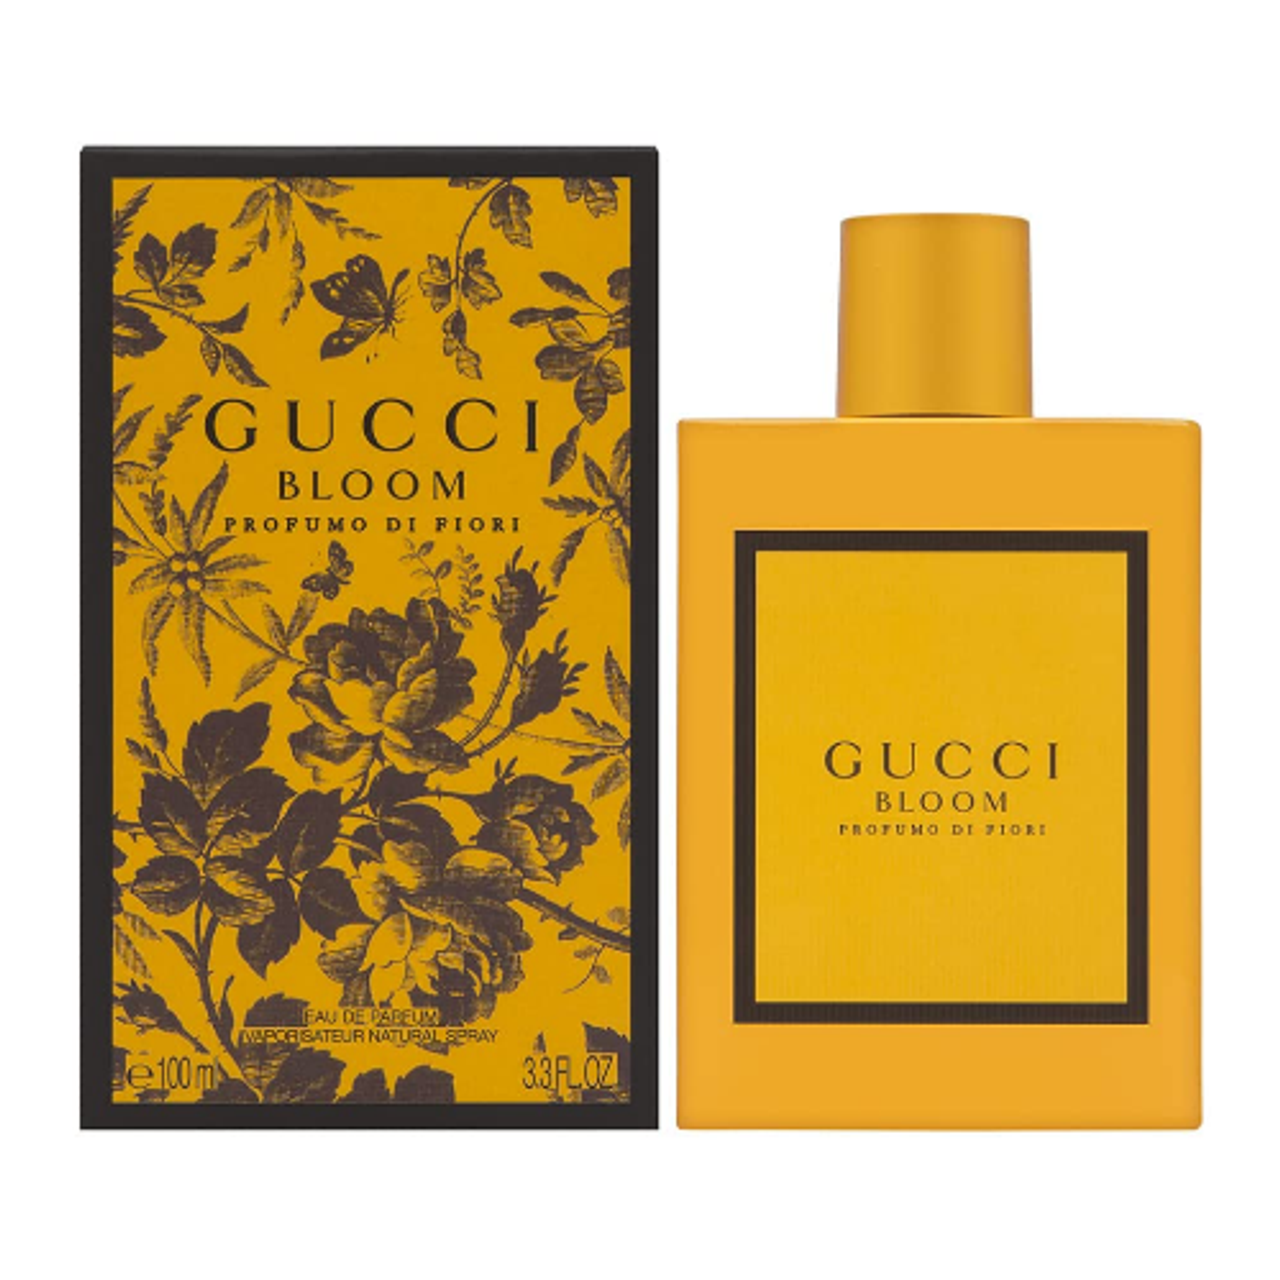 Gucci Bloom Profumo Di Fiori by Gucci 3.3 oz EDP for Women - ForeverLux